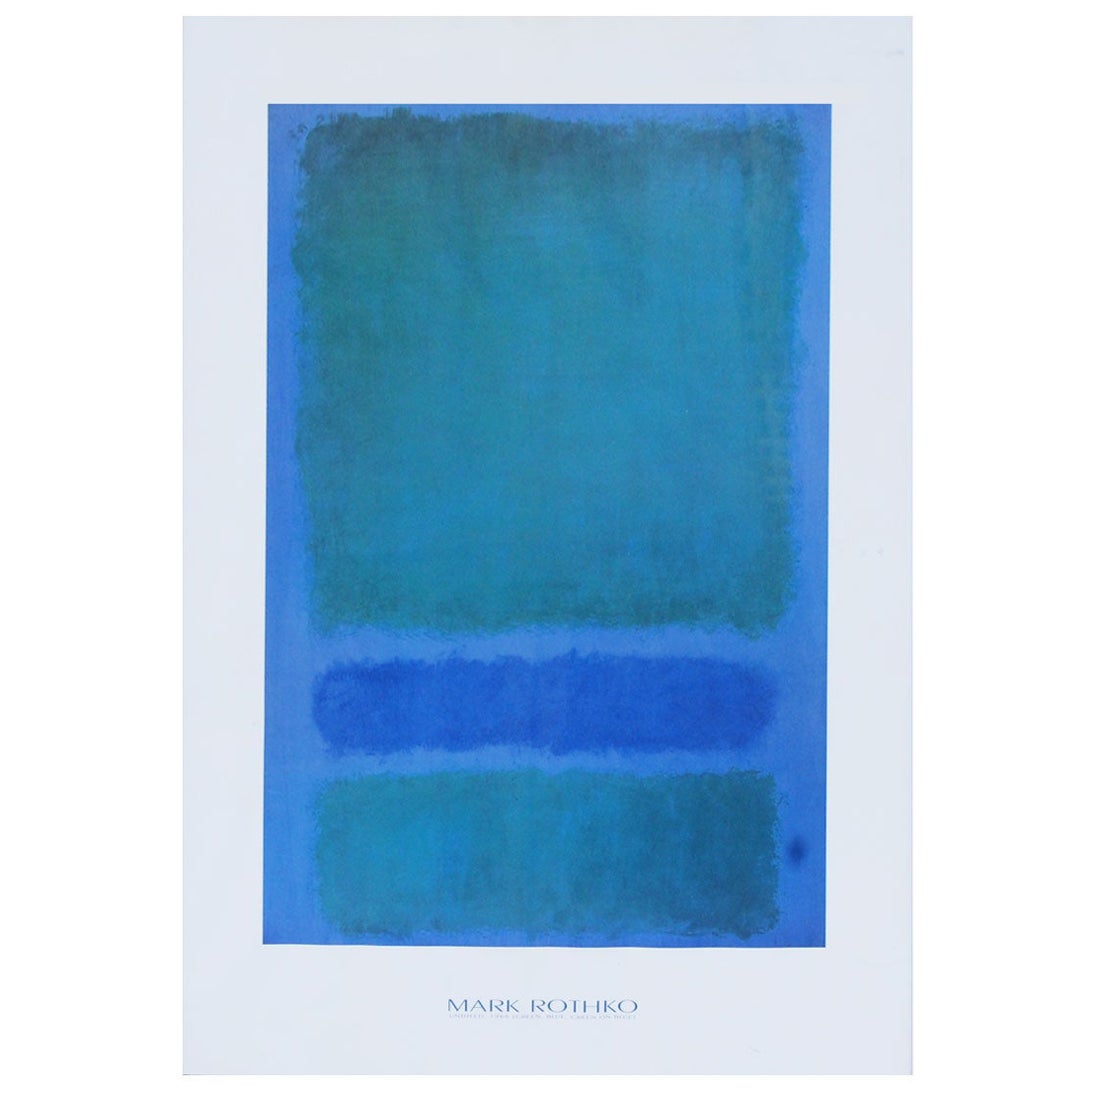 Mark Rothko Framed Print "Green, Blue Green on Blue" 1968